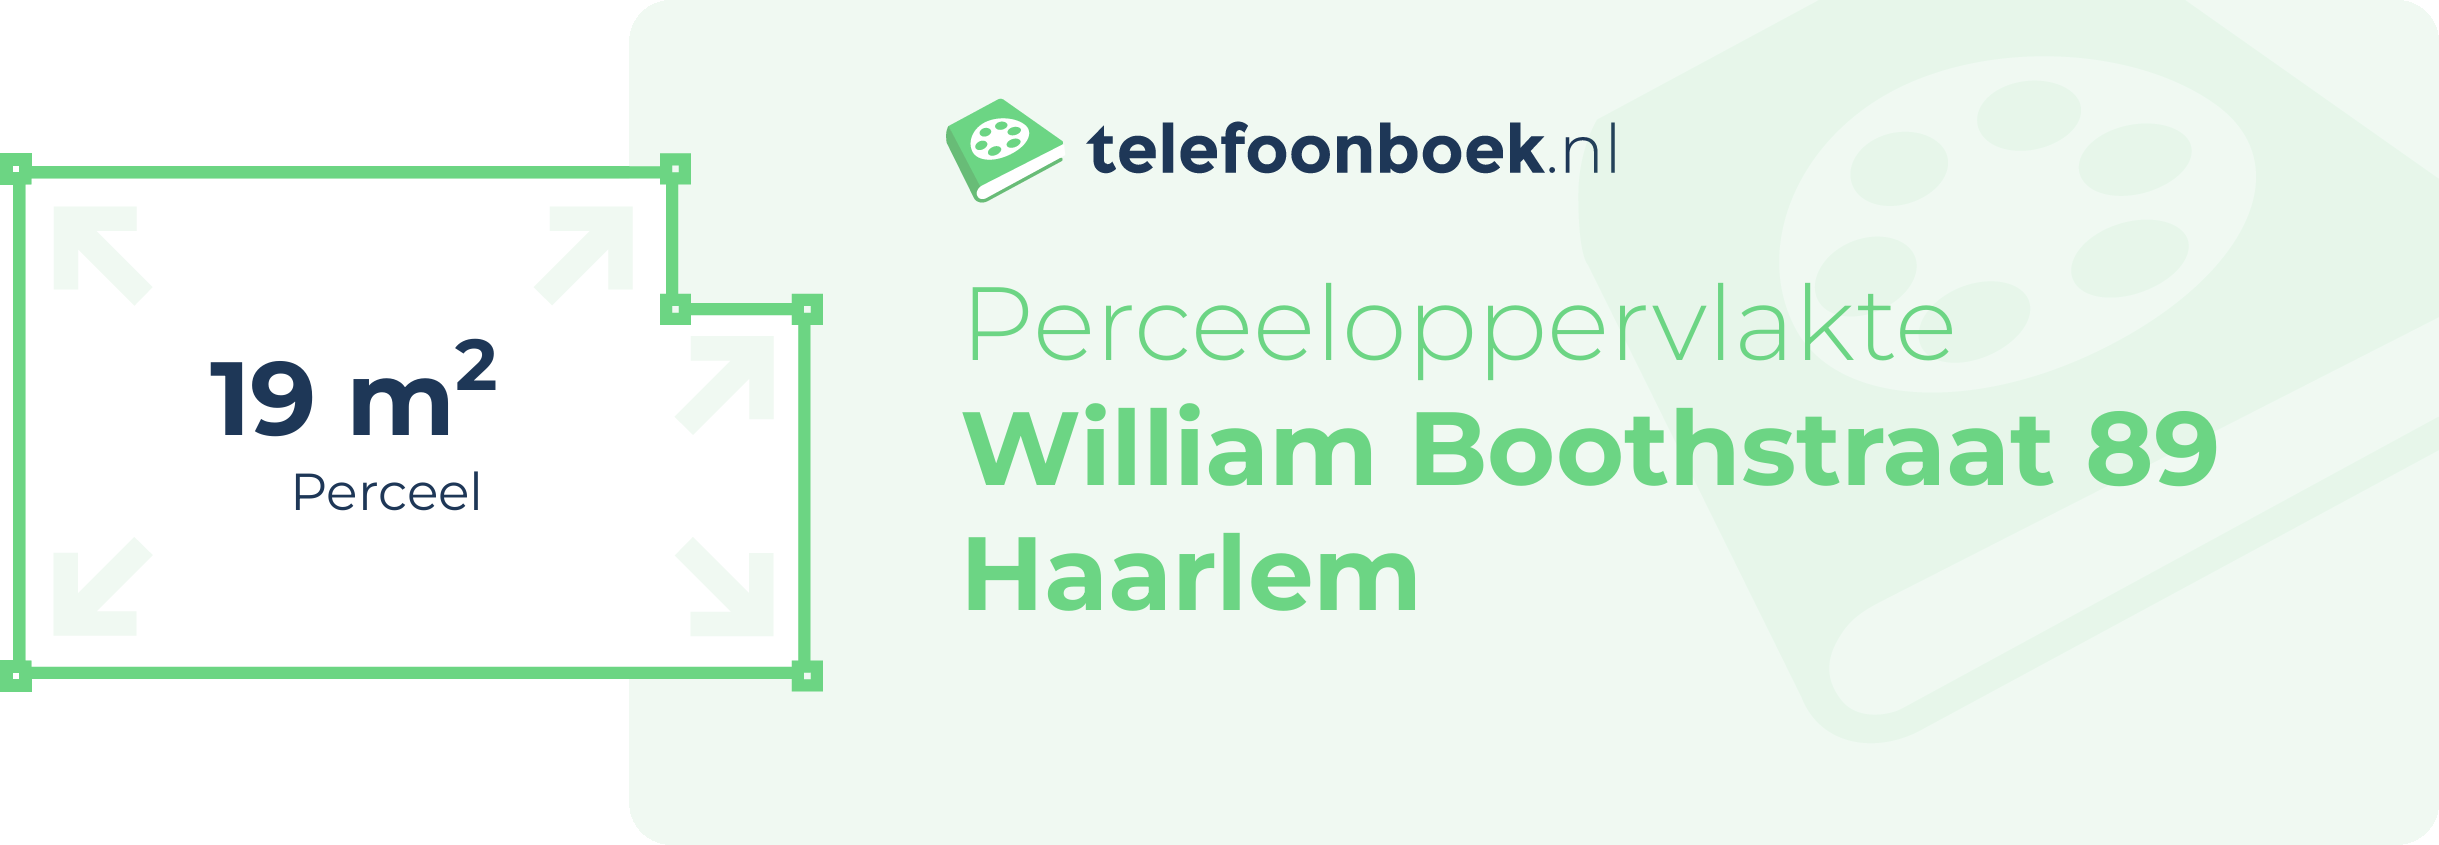 Perceeloppervlakte William Boothstraat 89 Haarlem